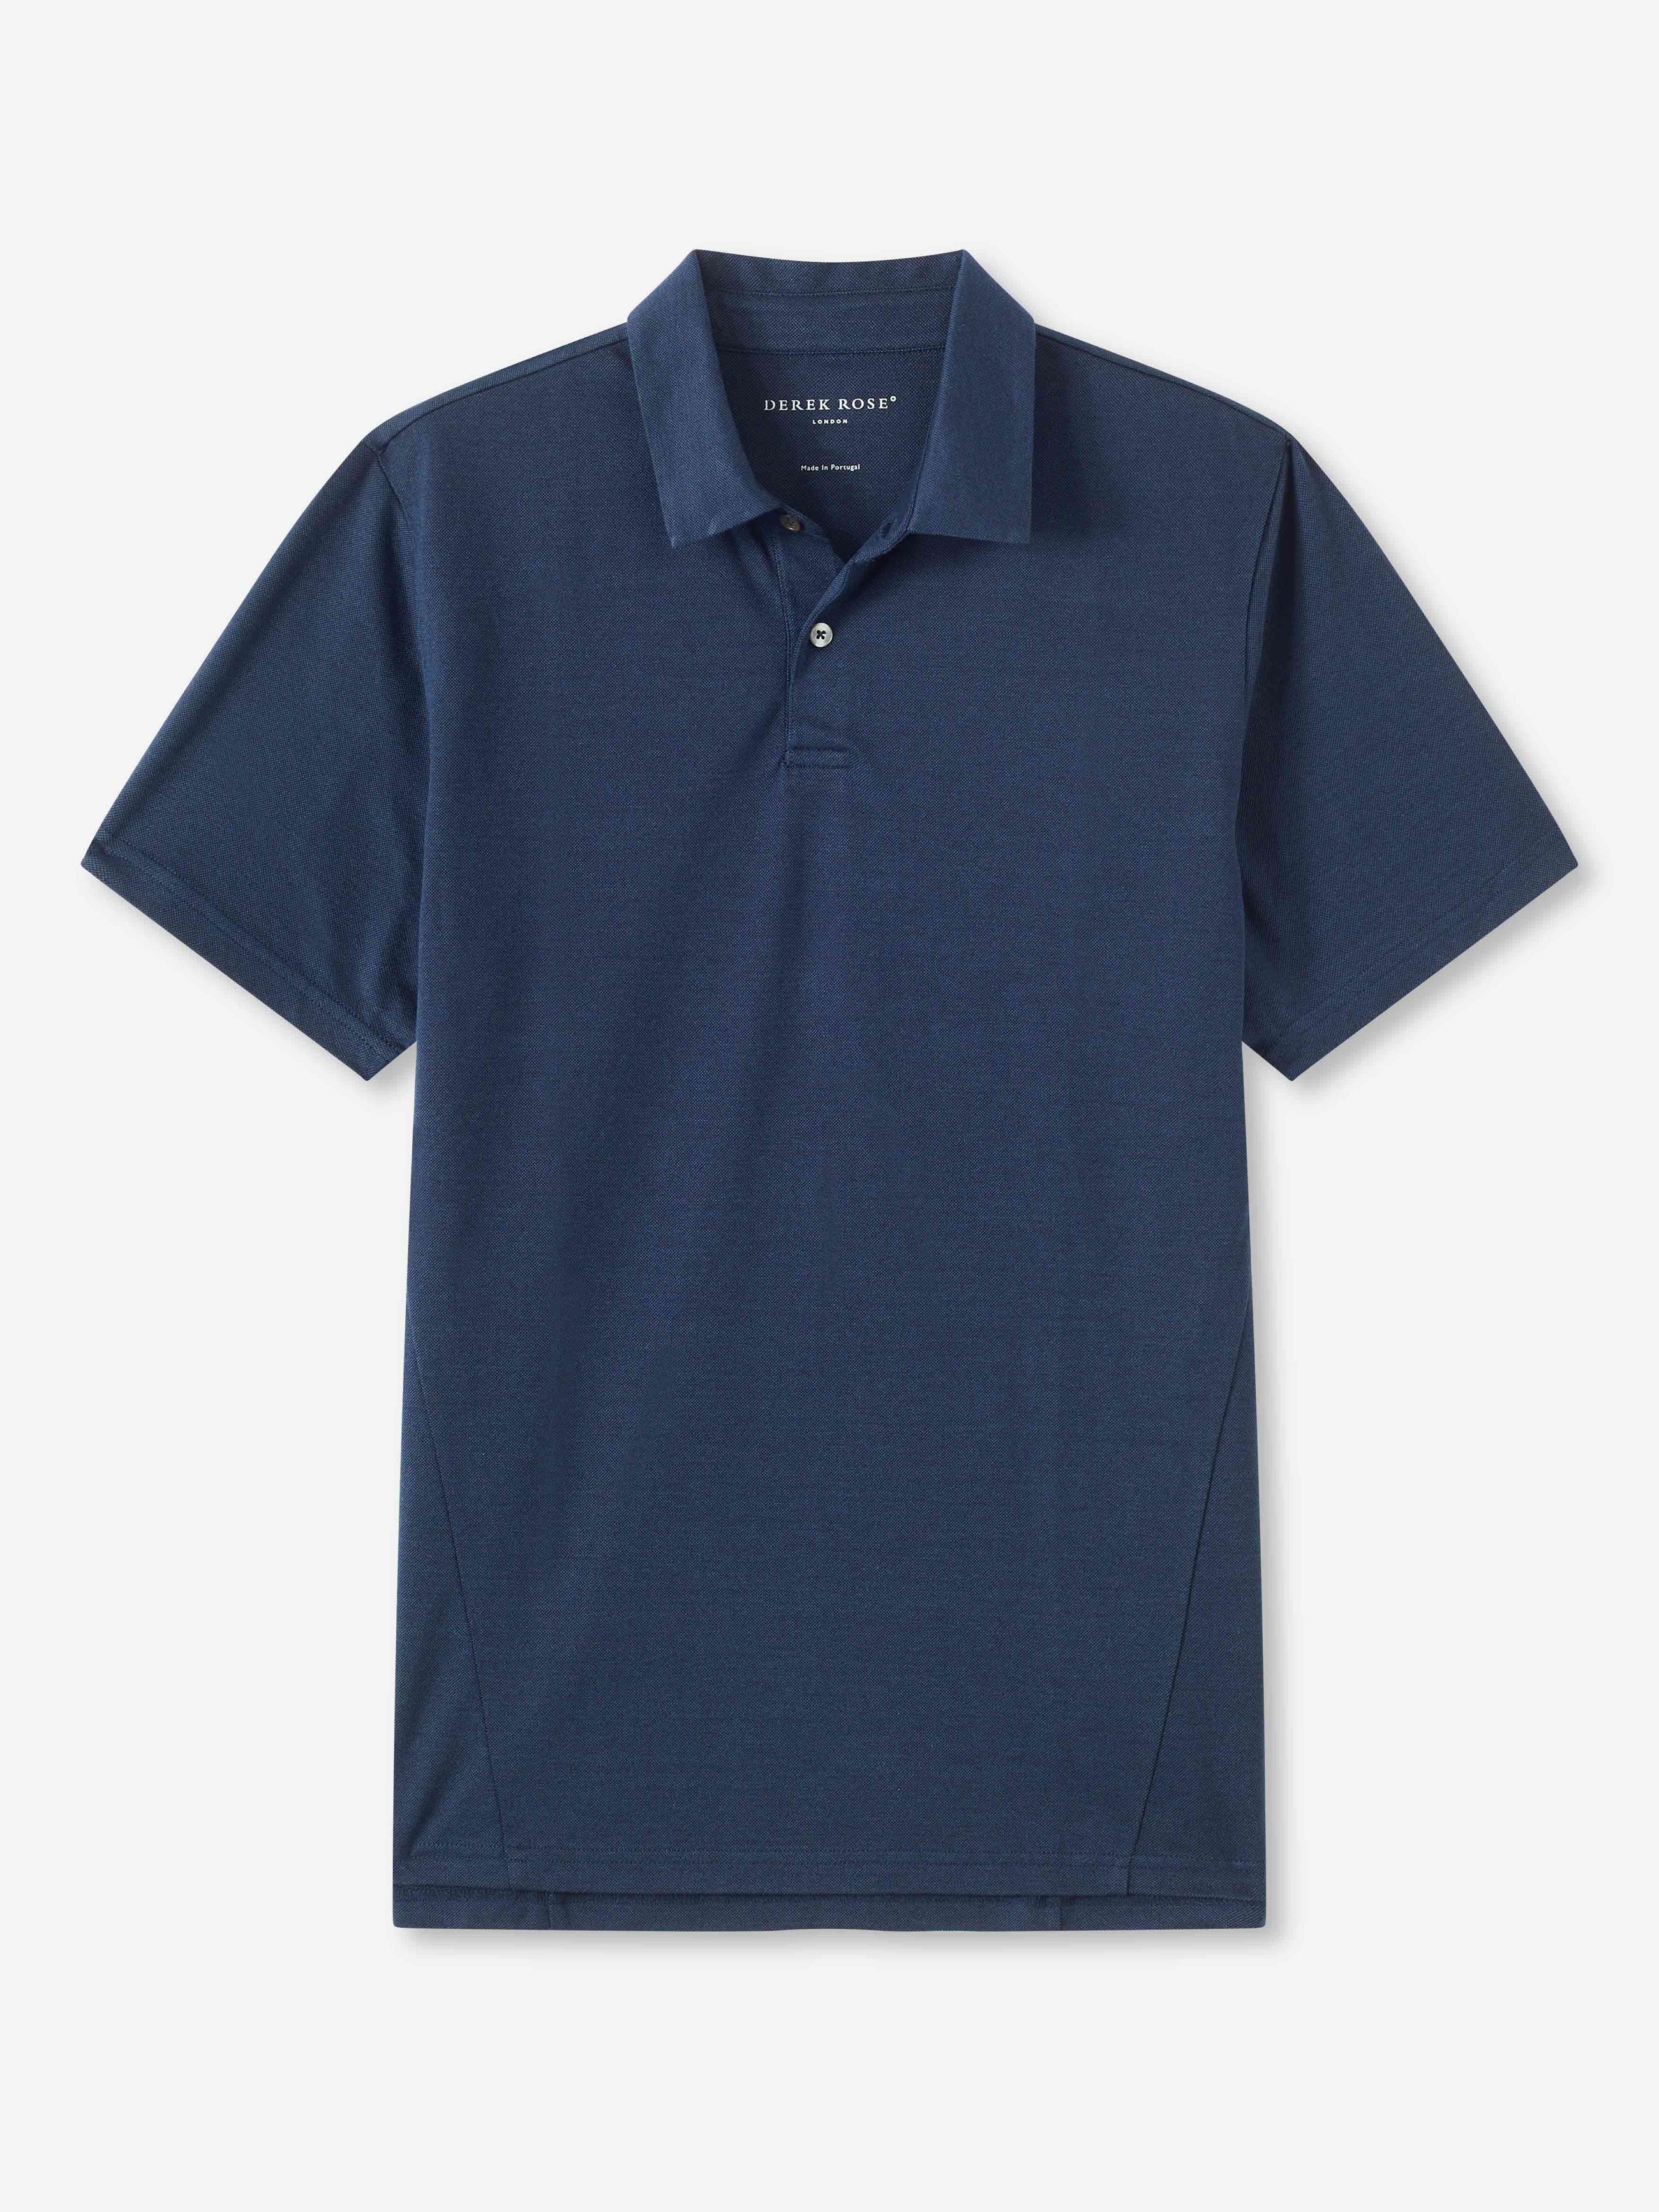 Men's Polo Shirt Ramsay 2 Pique Cotton Tencel Navy